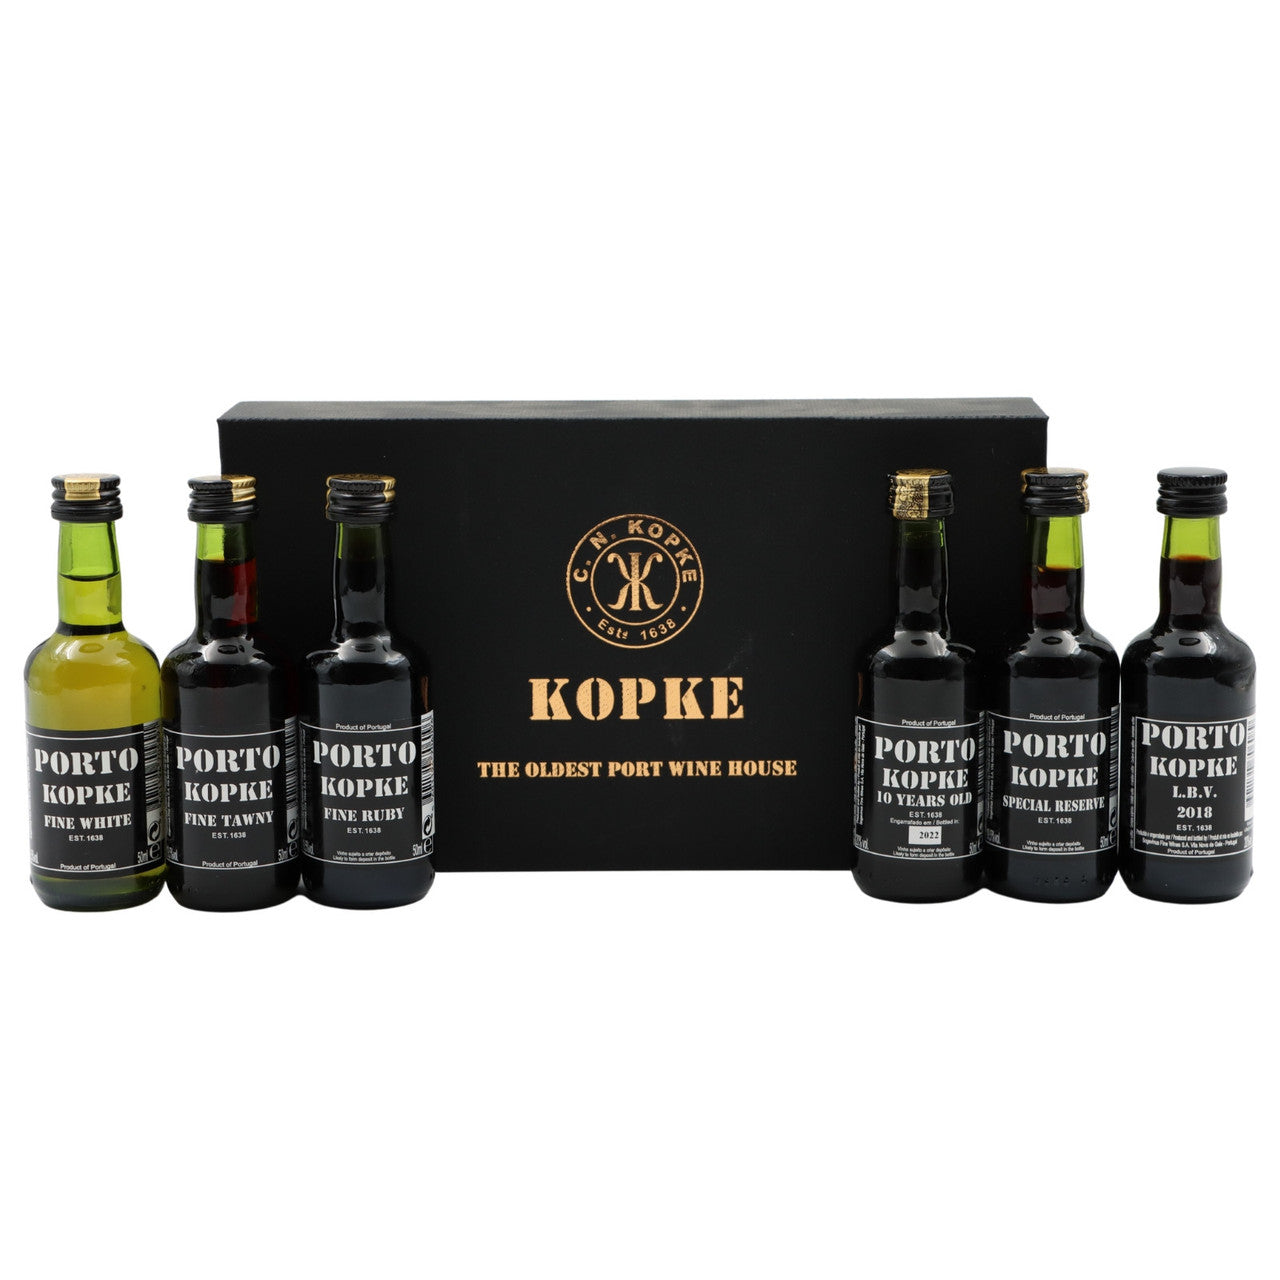 Kopke Miniature Gift Pack 6 X 50ml Bottles